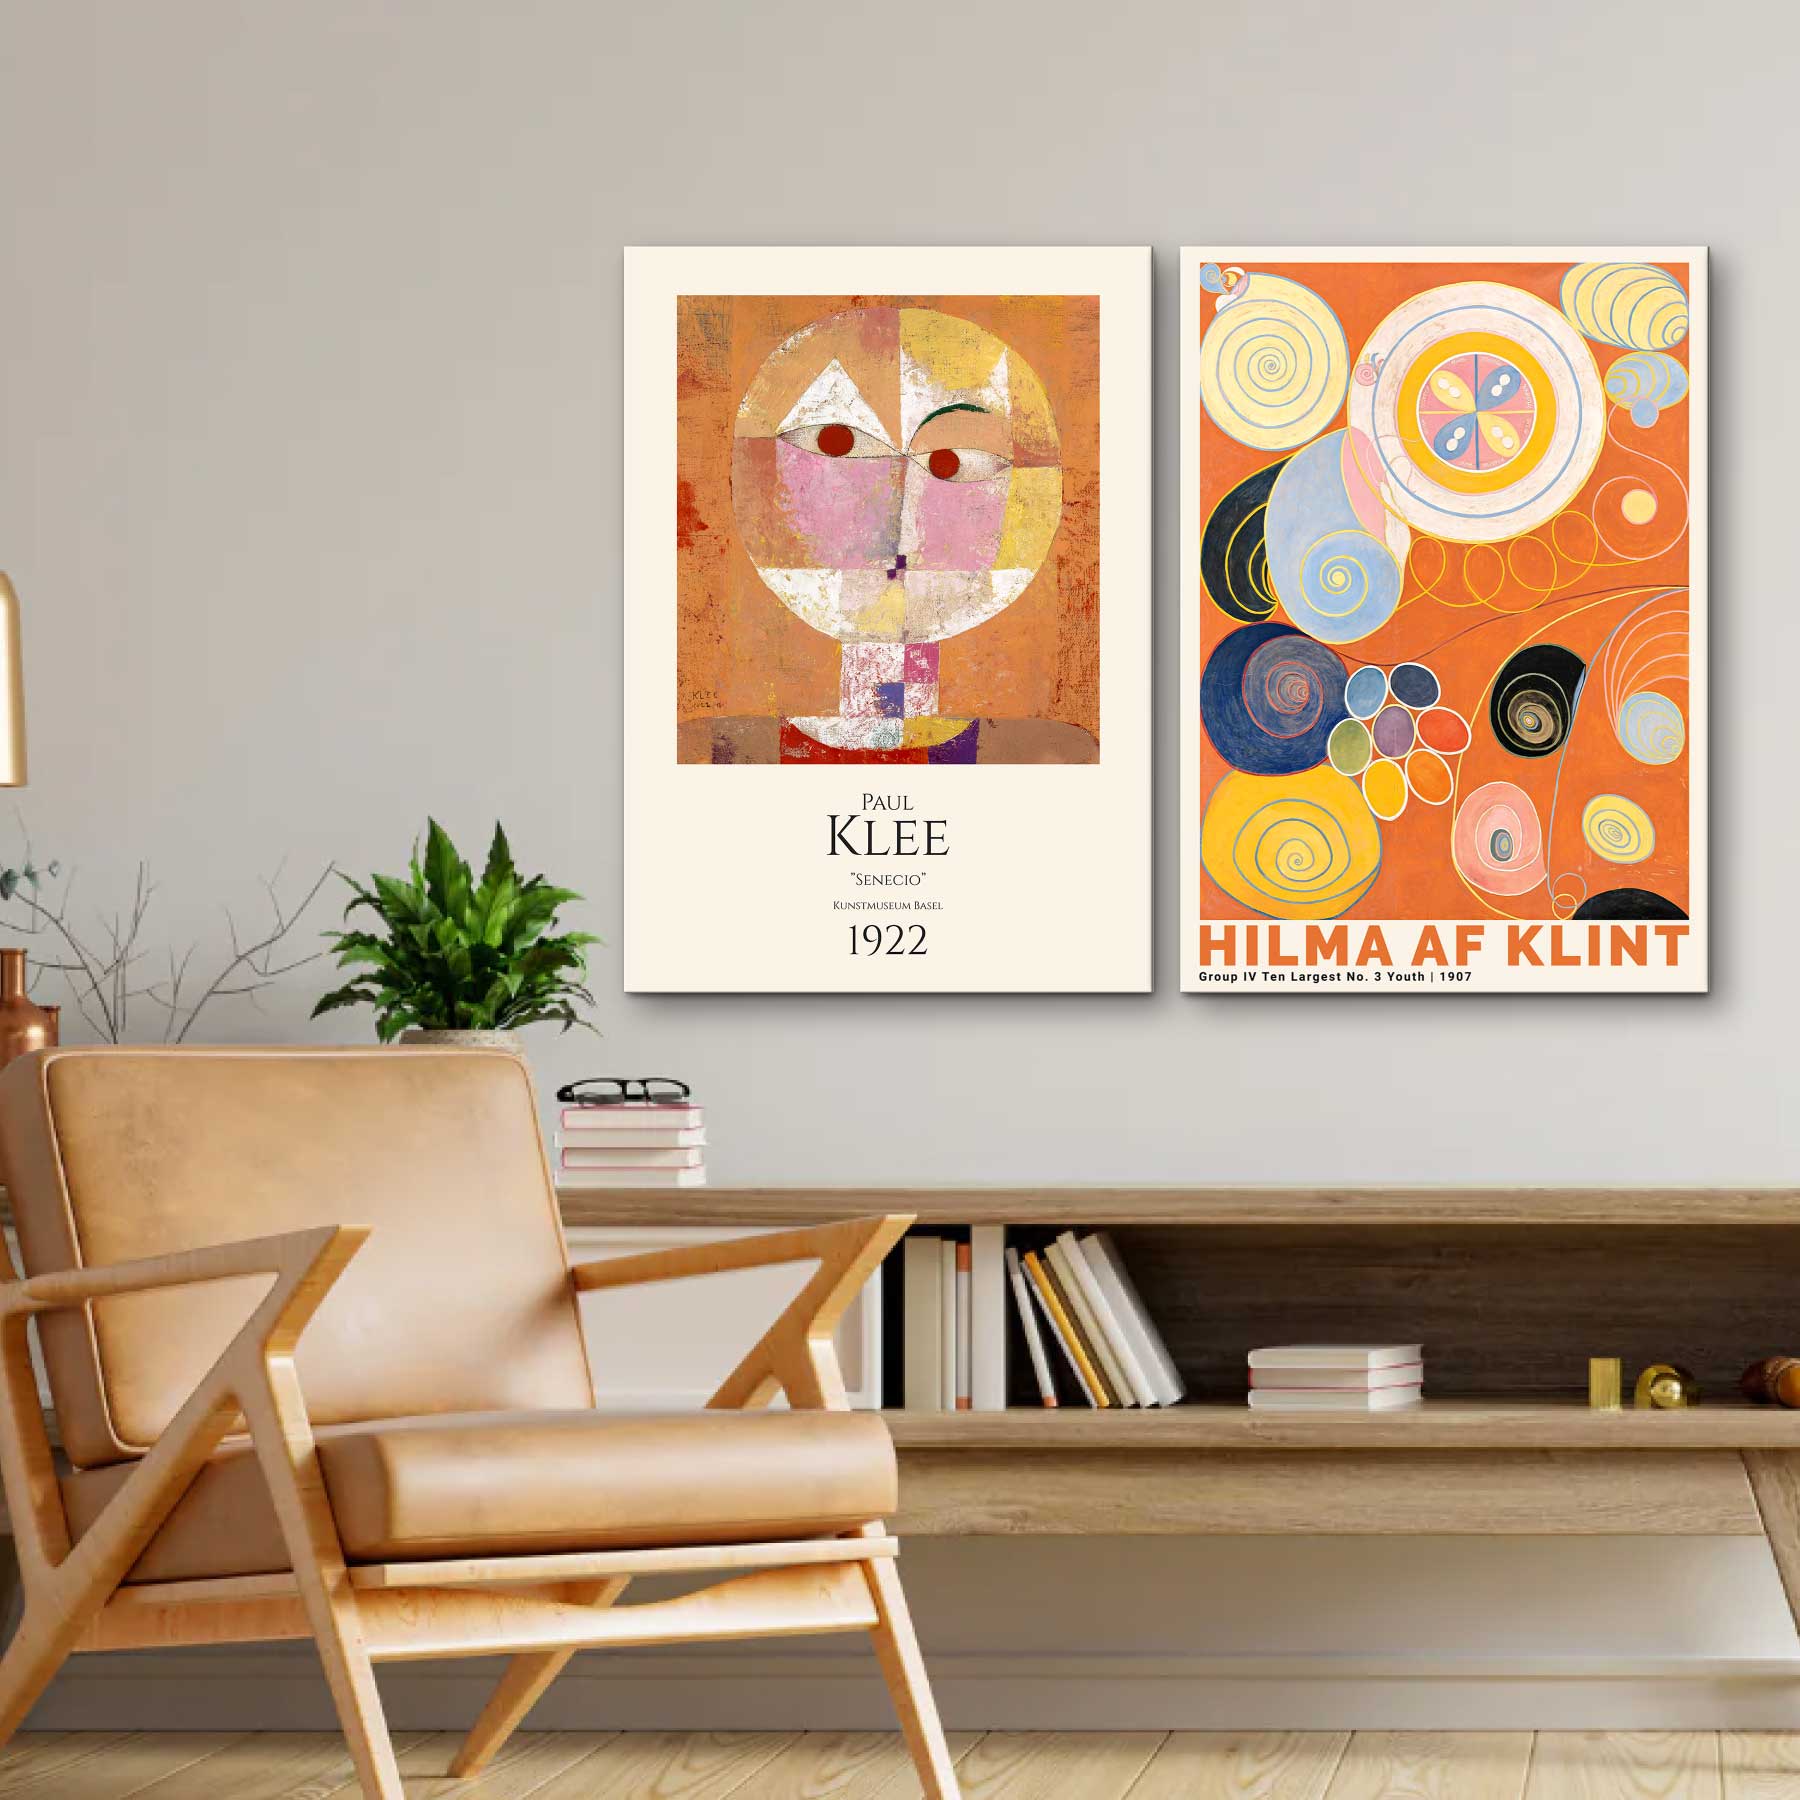 Lærredsbilleder med orange kunst af Paul Klee og Hilma af Klint